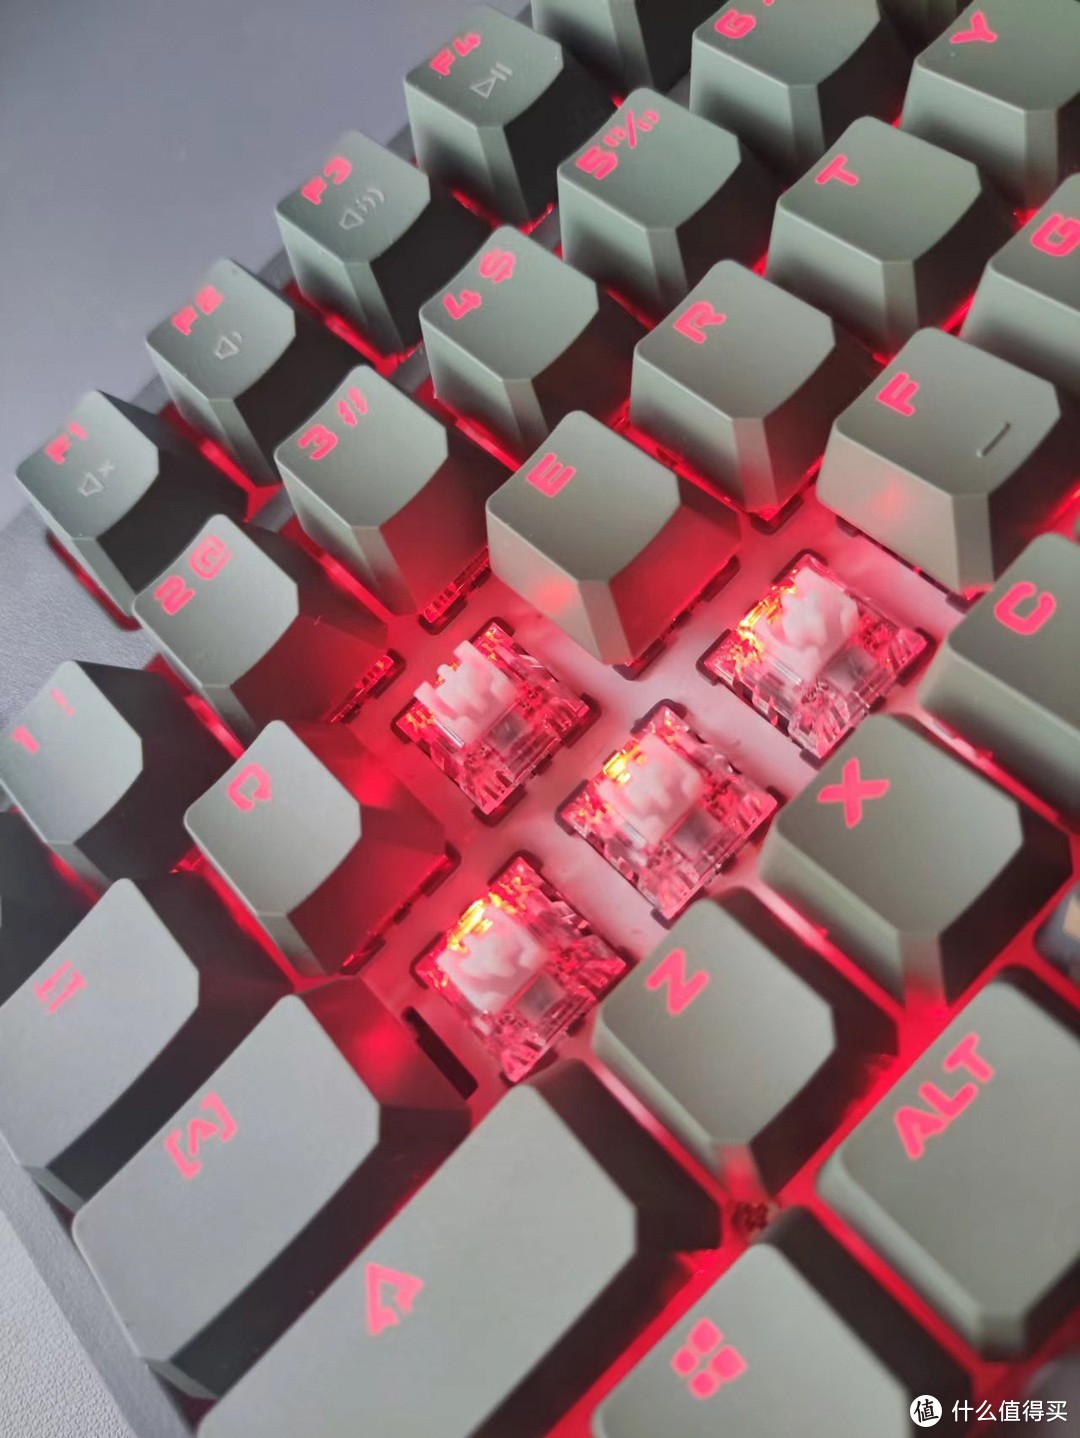 血手幽灵3玩家变速机械键盘T98——新体验